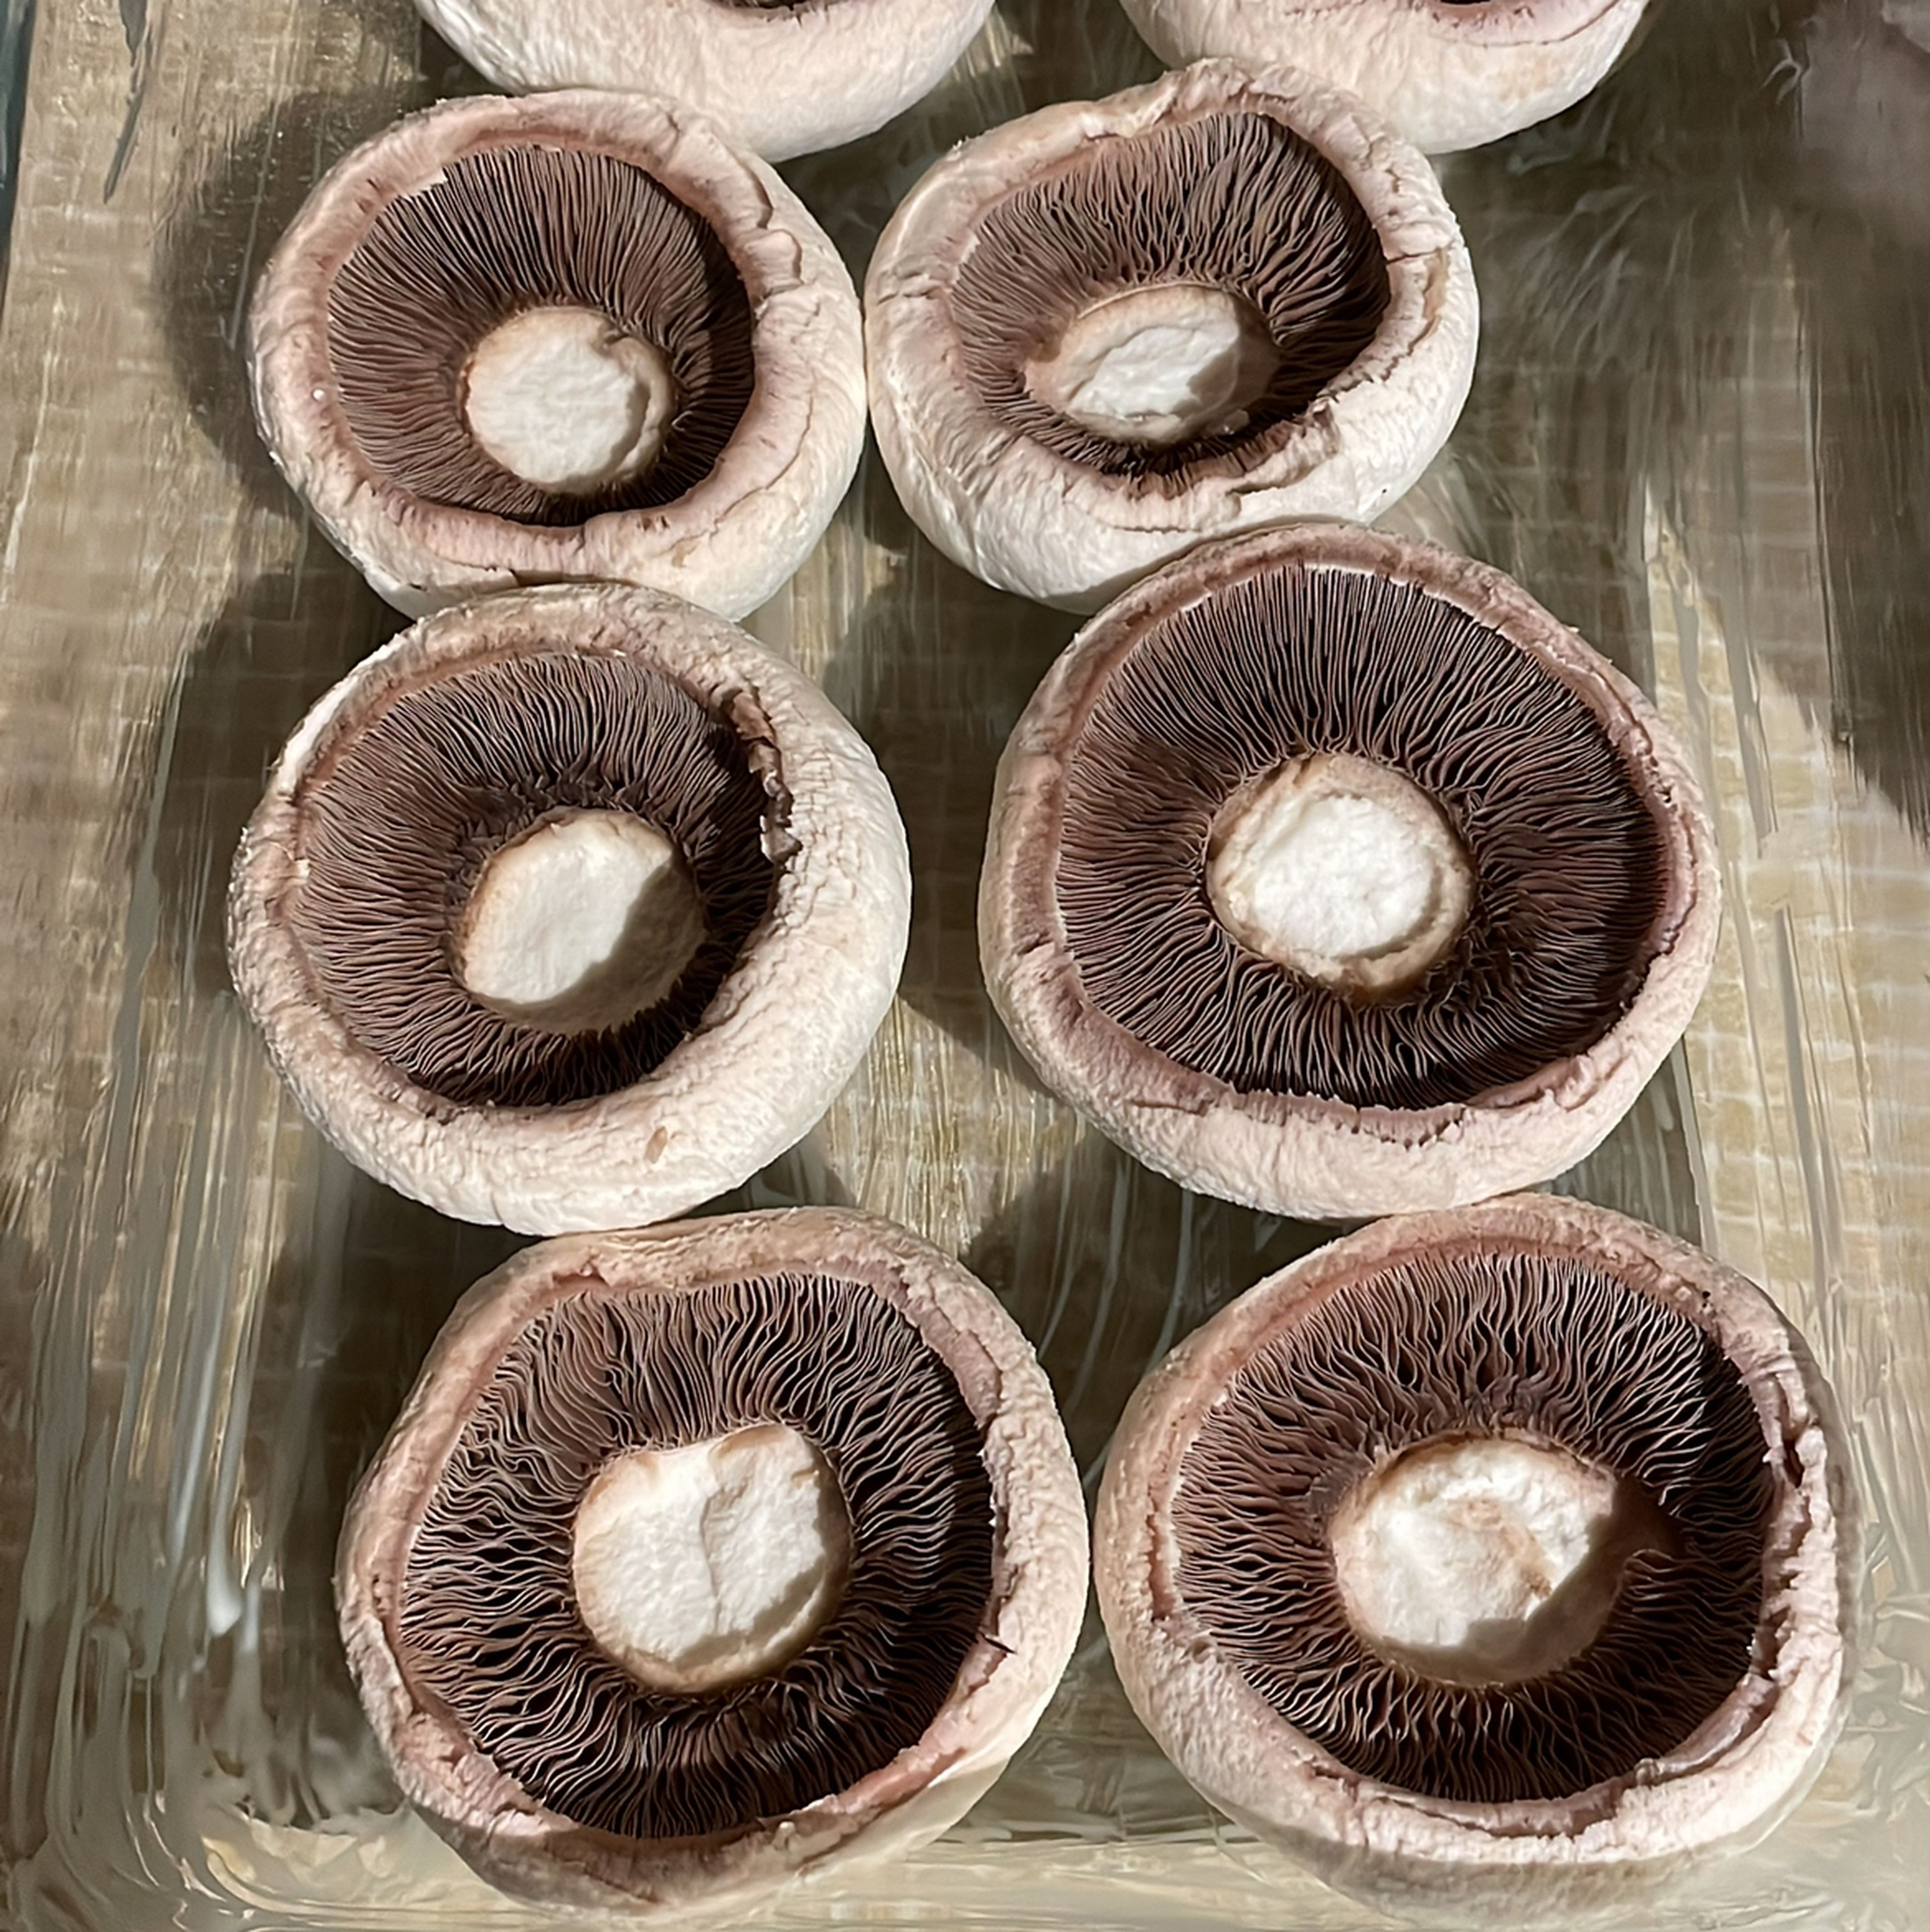 Champignons ggf. mit Küchenkrepp säubern. Stiele herausdrehen und in einer eingefetteten Form legen